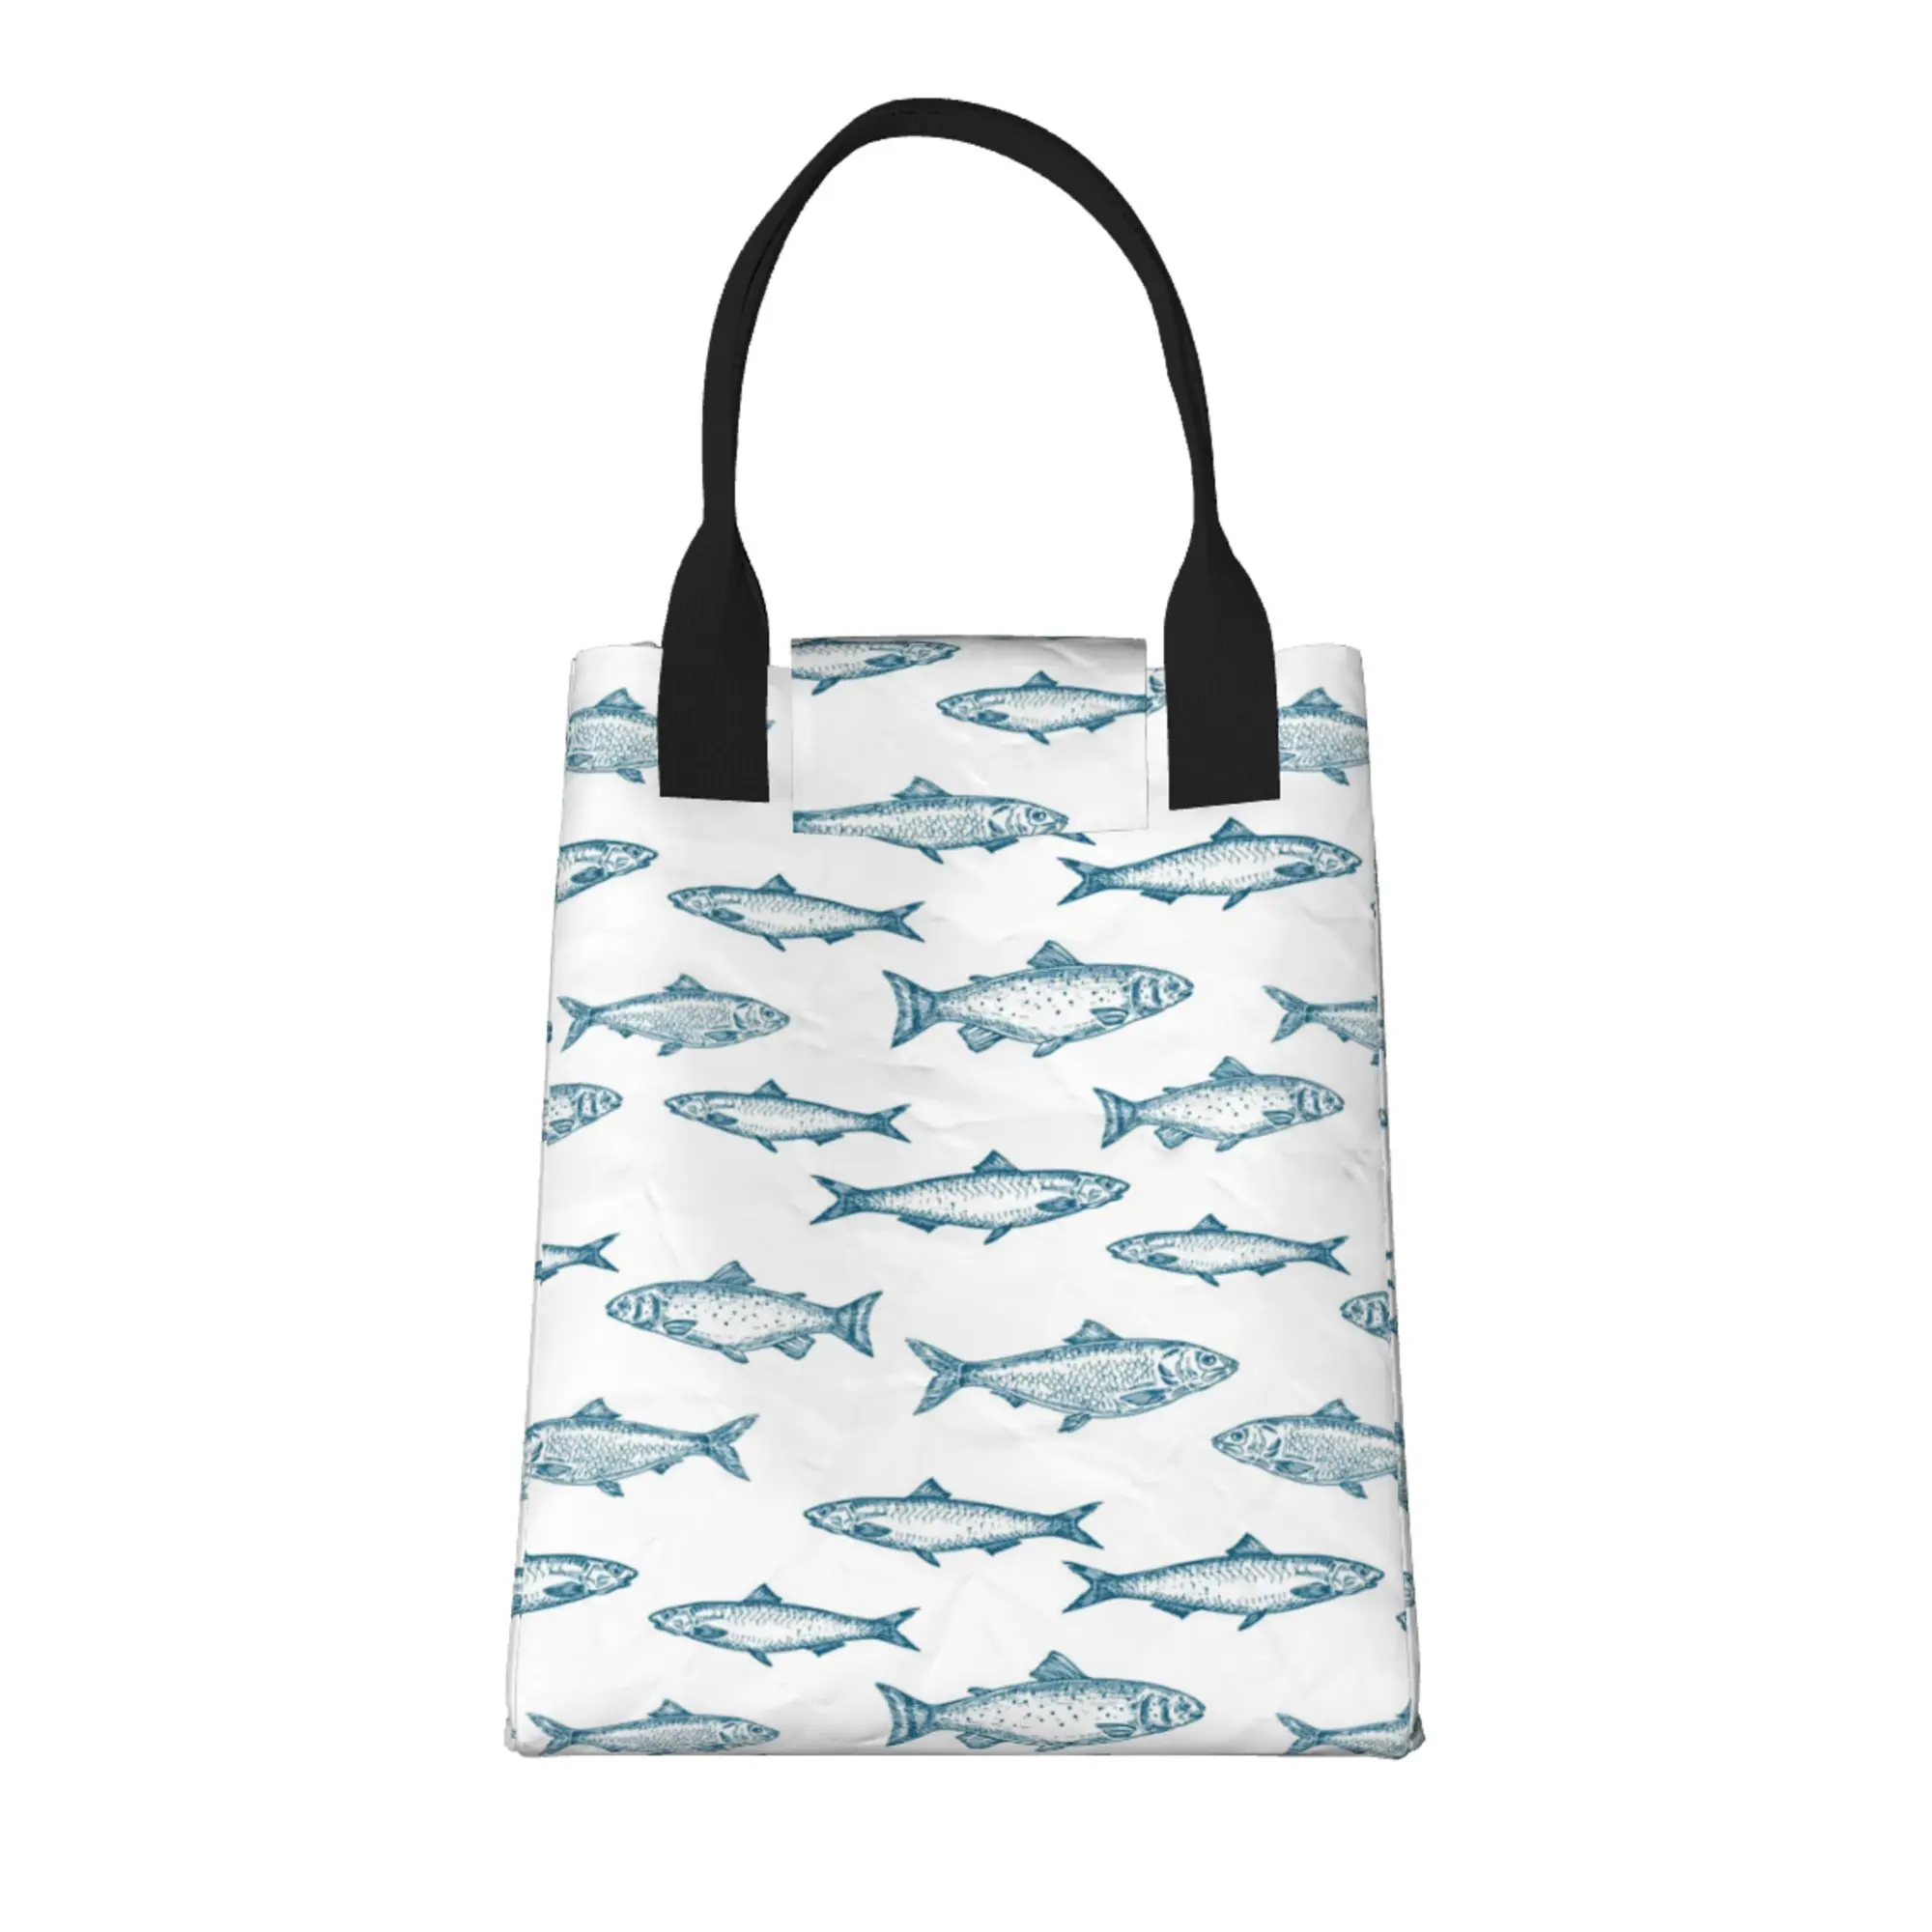 Нарисованная вручную рыба, бесшовная большая модная сумка для покупок с ручками, многоразовая хозяйственная сумка из прочной винтажной хлопчатобумажной ткани